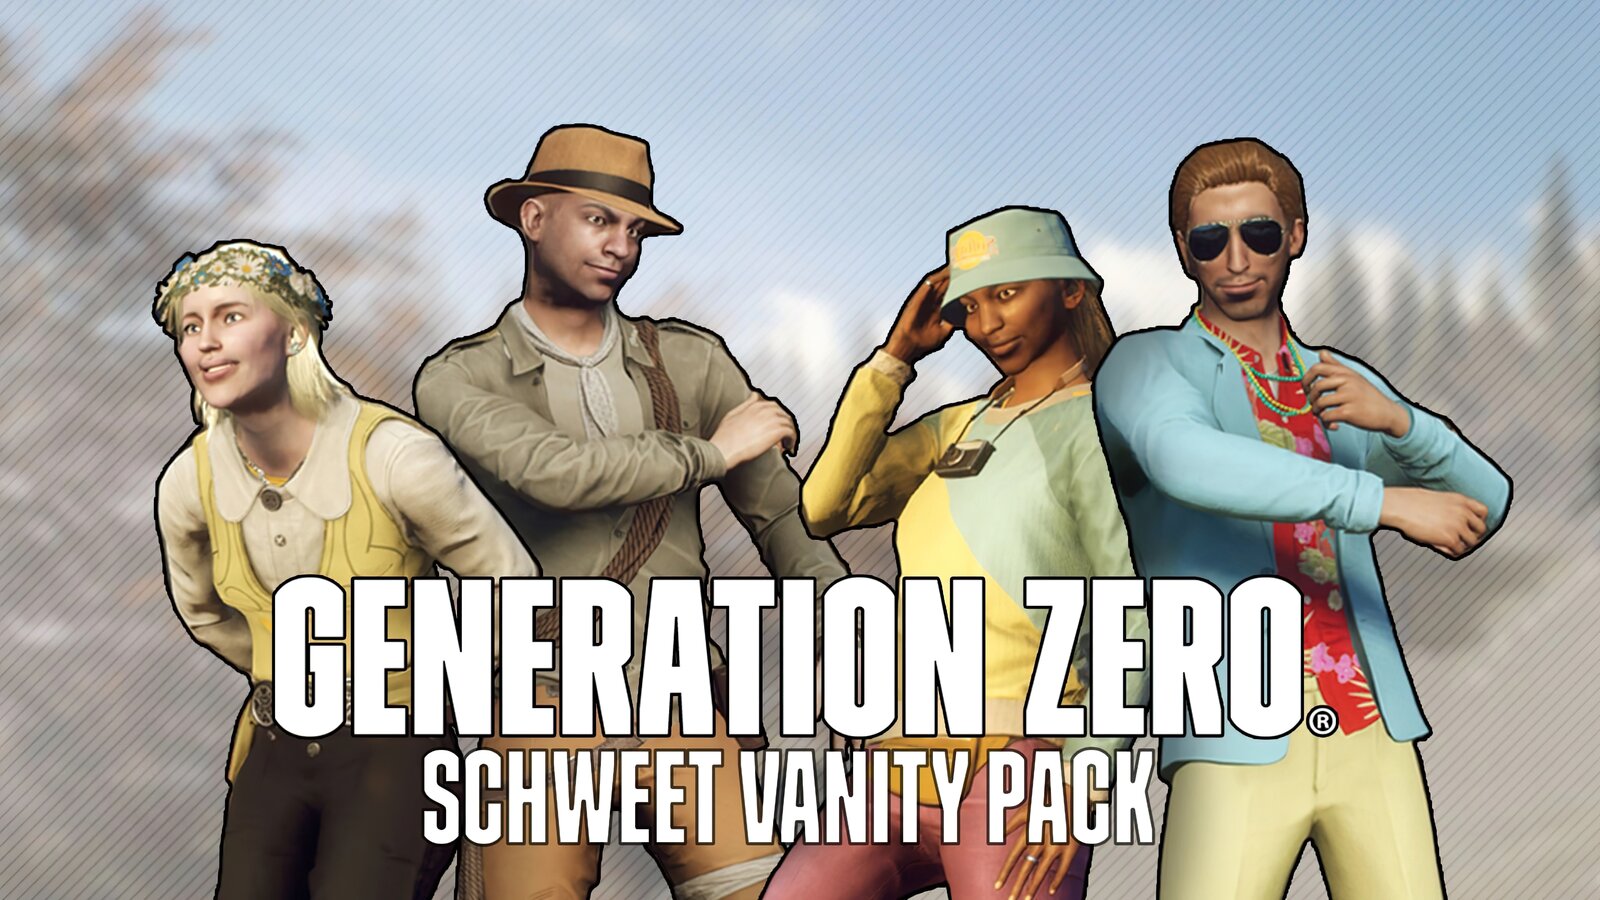 Generation Zero - Schweet Vanity Pack